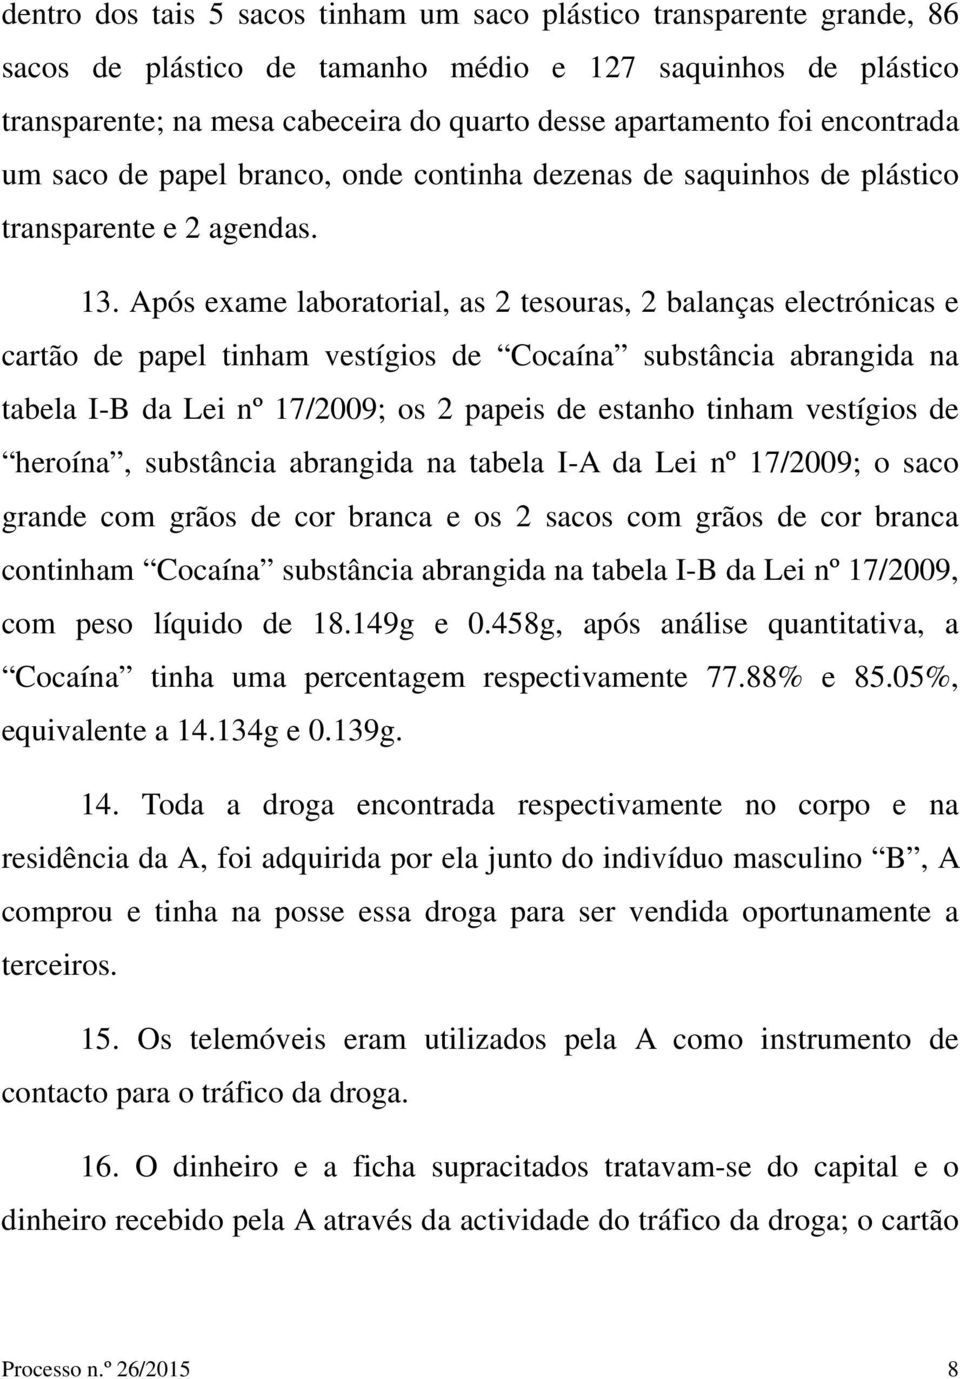 Após exame laboratorial, as 2 tesouras, 2 balanças electrónicas e cartão de papel tinham vestígios de Cocaína substância abrangida na tabela I-B da Lei nº 17/2009; os 2 papeis de estanho tinham